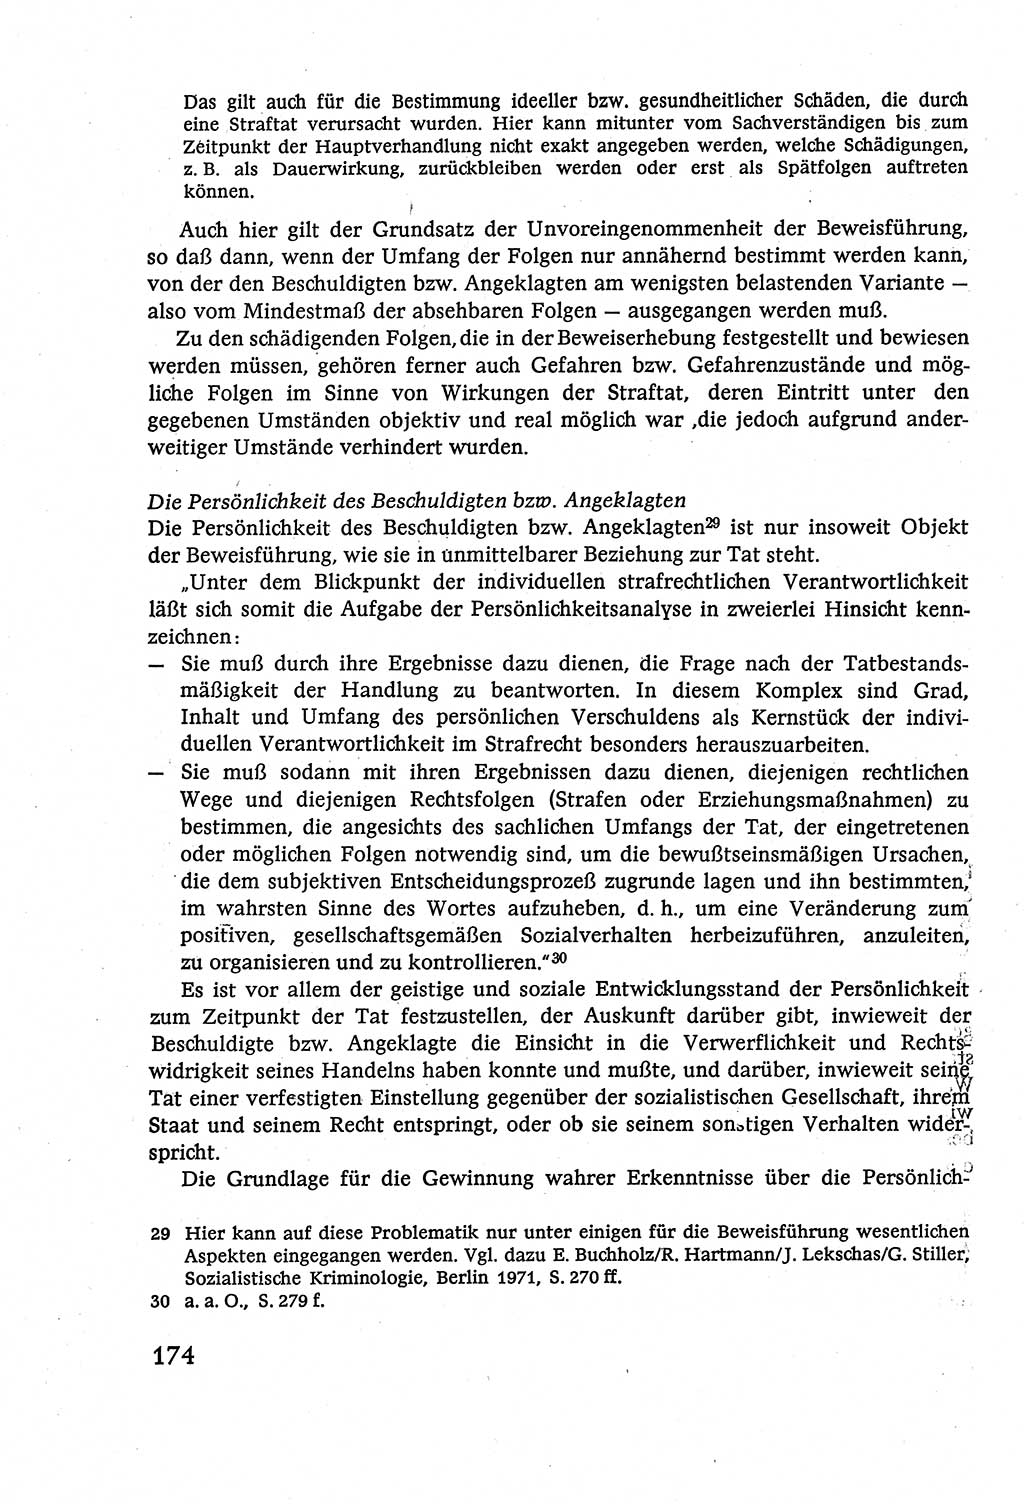 Strafverfahrensrecht [Deutsche Demokratische Republik (DDR)], Lehrbuch 1977, Seite 174 (Strafverf.-R. DDR Lb. 1977, S. 174)